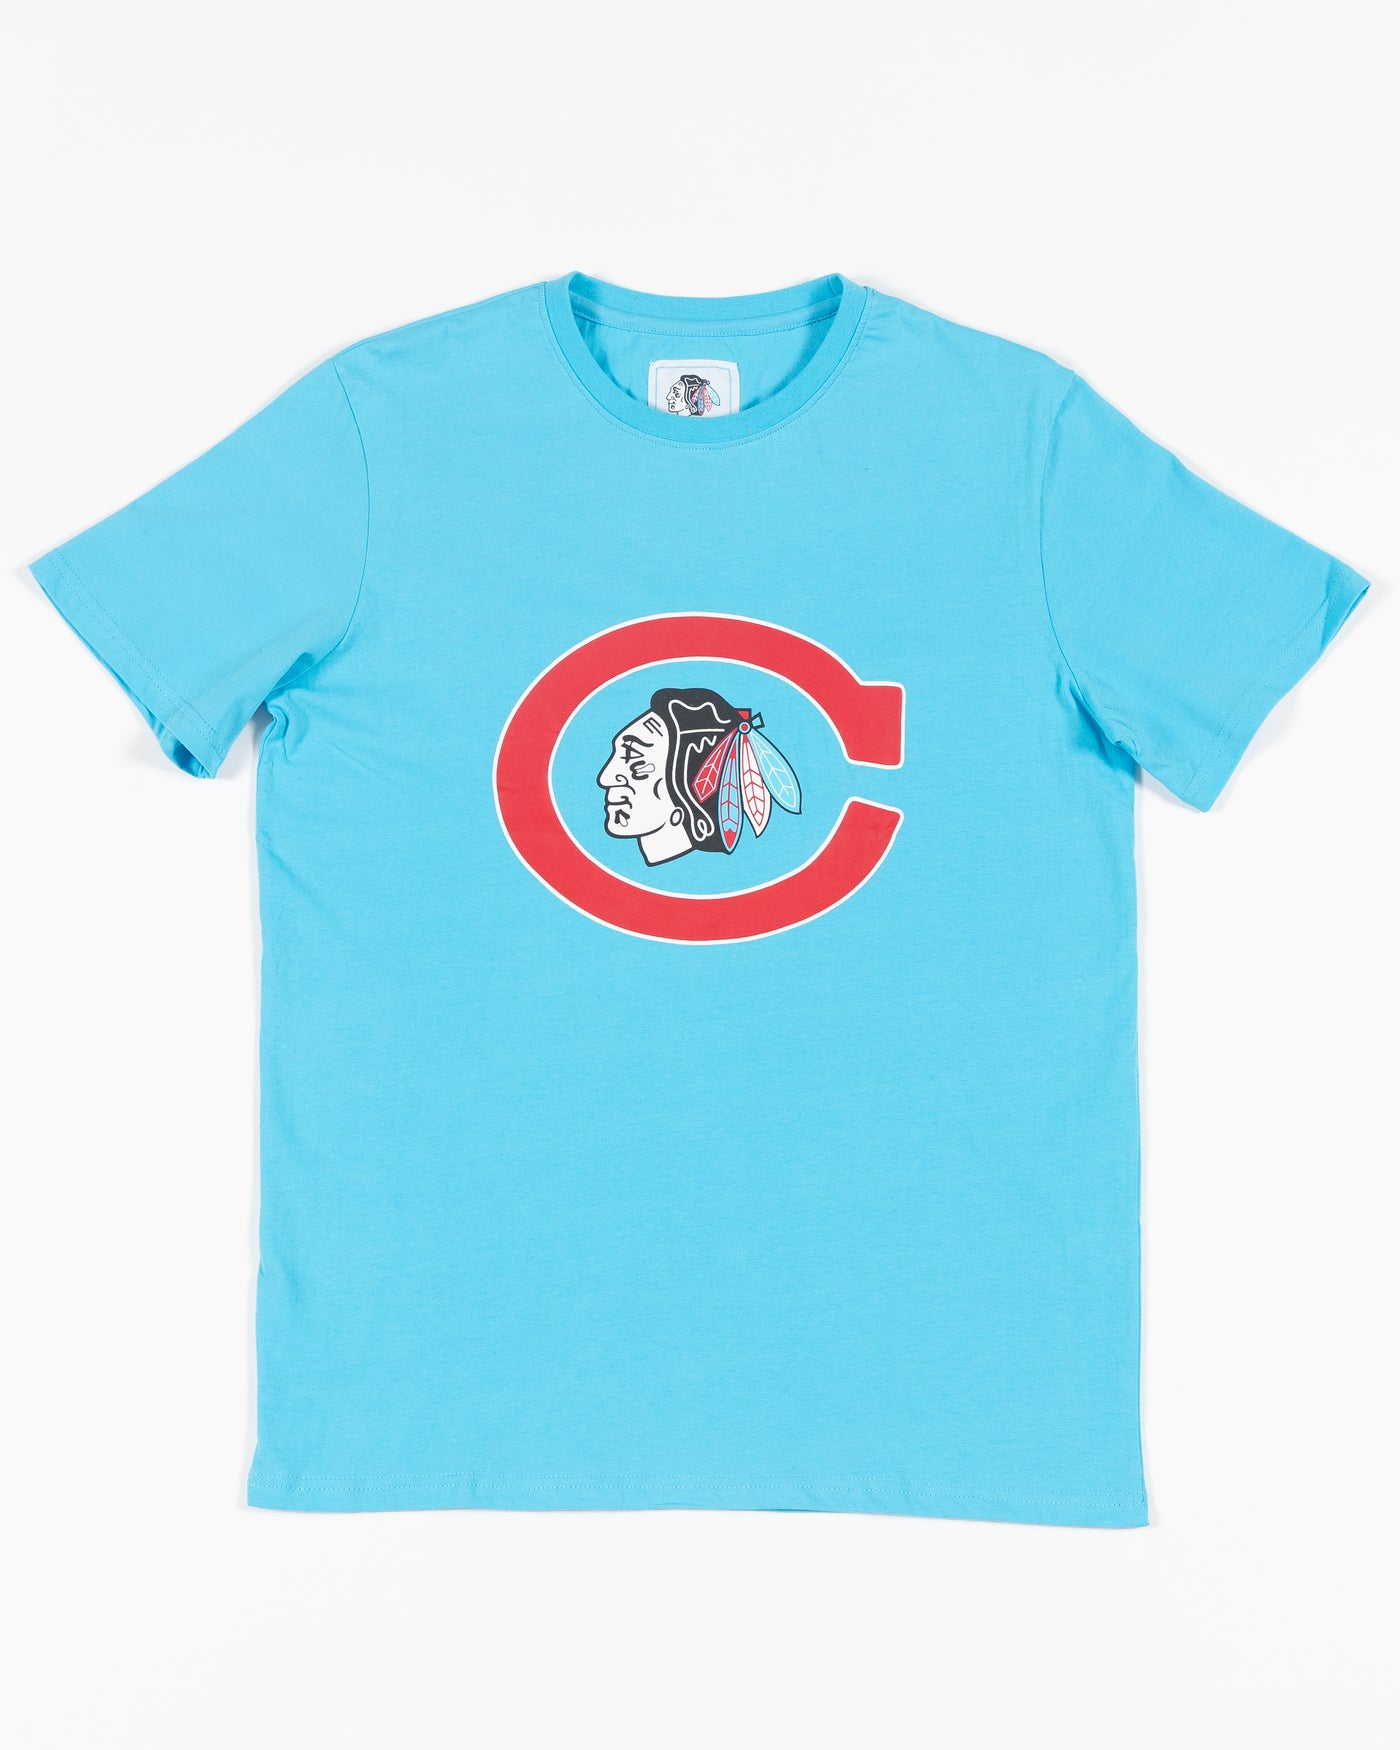 Chicago Flag Chicago W Chicago T-shirt Chicago Cubs 